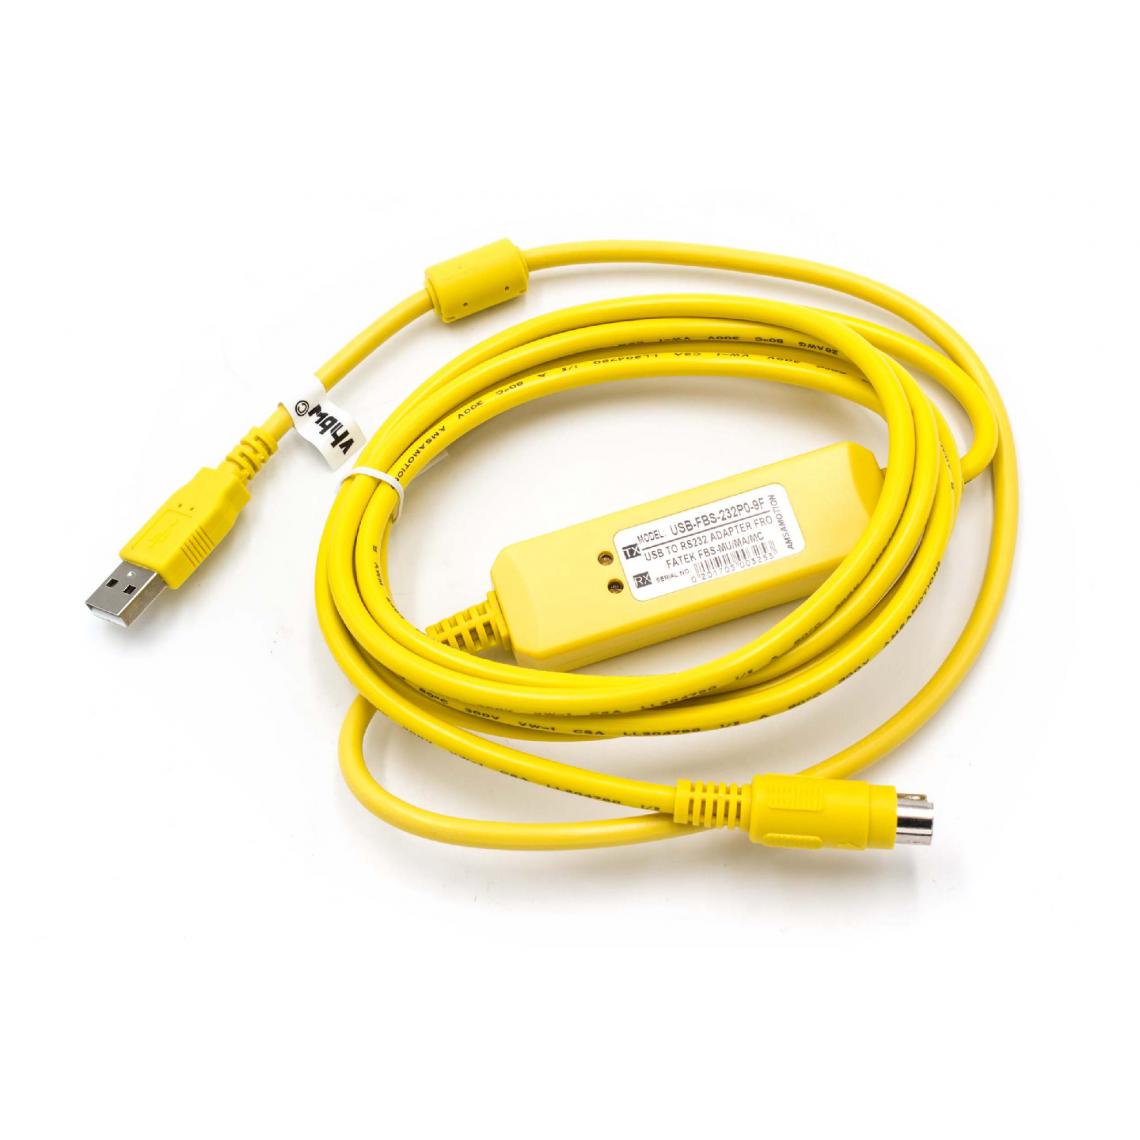 Vhbw - vhbw Câble USB de programmation compatible avec Fatek Facon Série FBS radio, jaune - Autre appareil de mesure